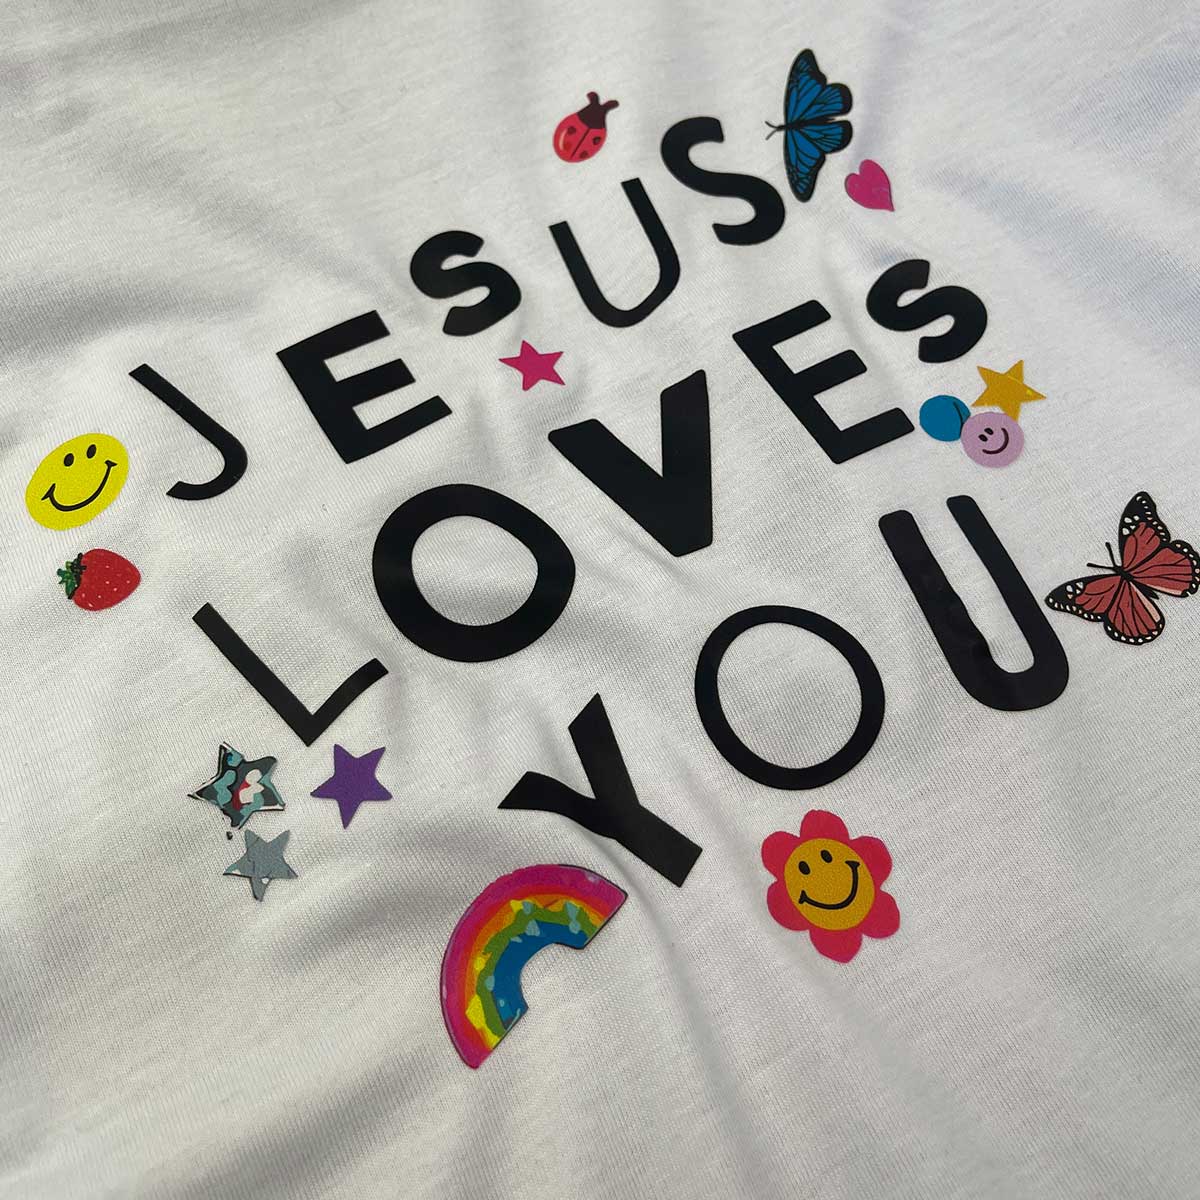 T-Shirt Infantil Branca Jesus Loves You